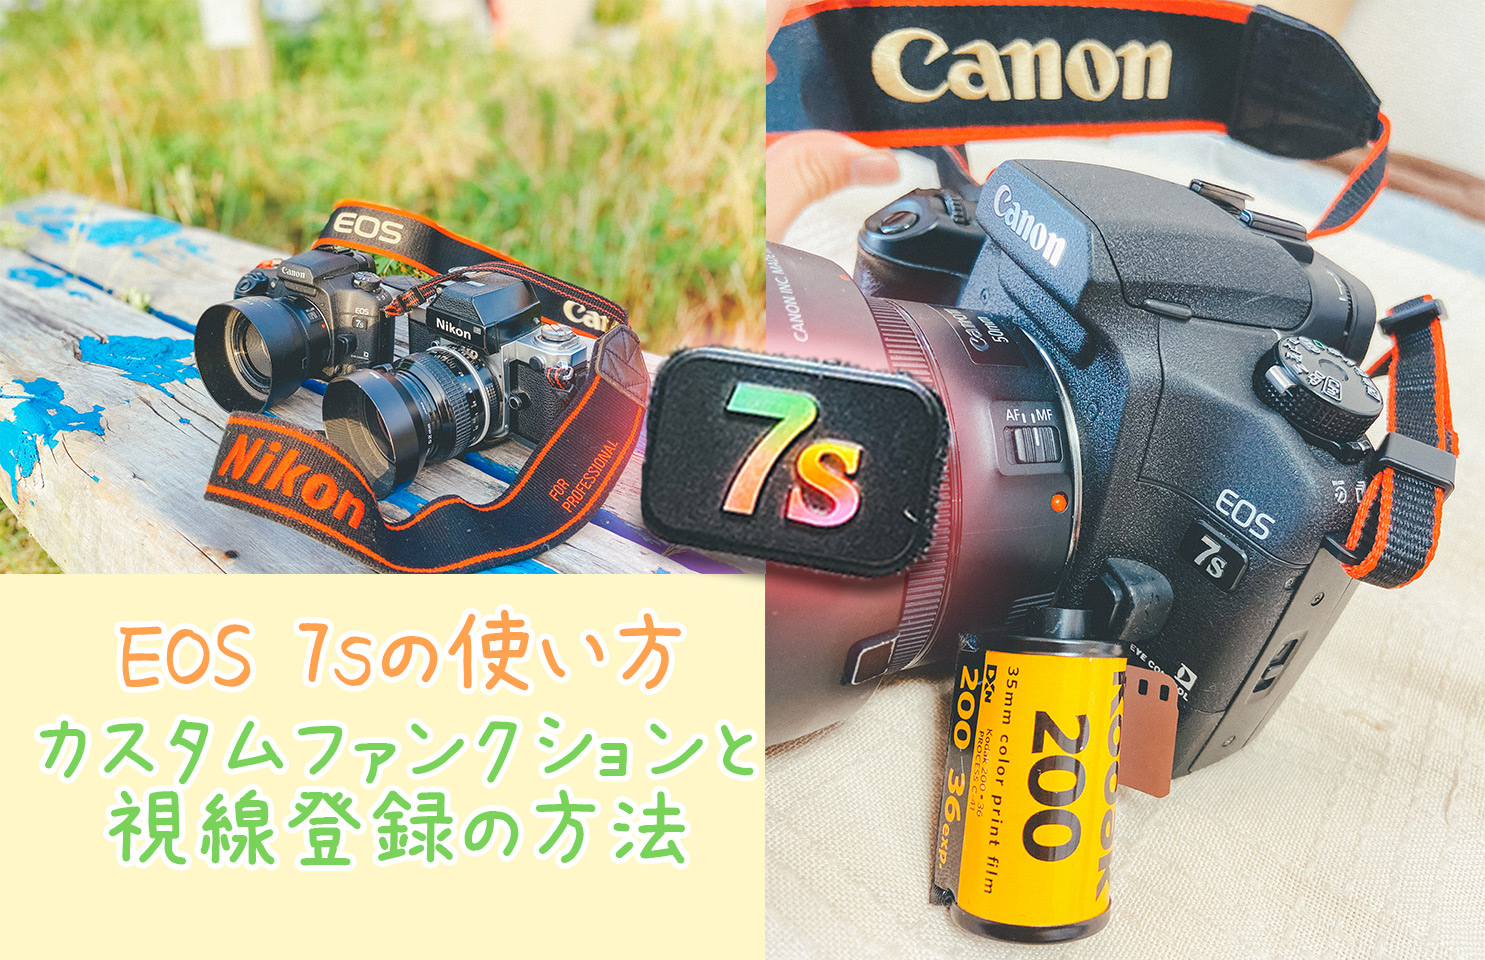 覚書】 Canon EOS 7sのカスタムファンクション一覧と視線入力の使い方 | ここカメ！